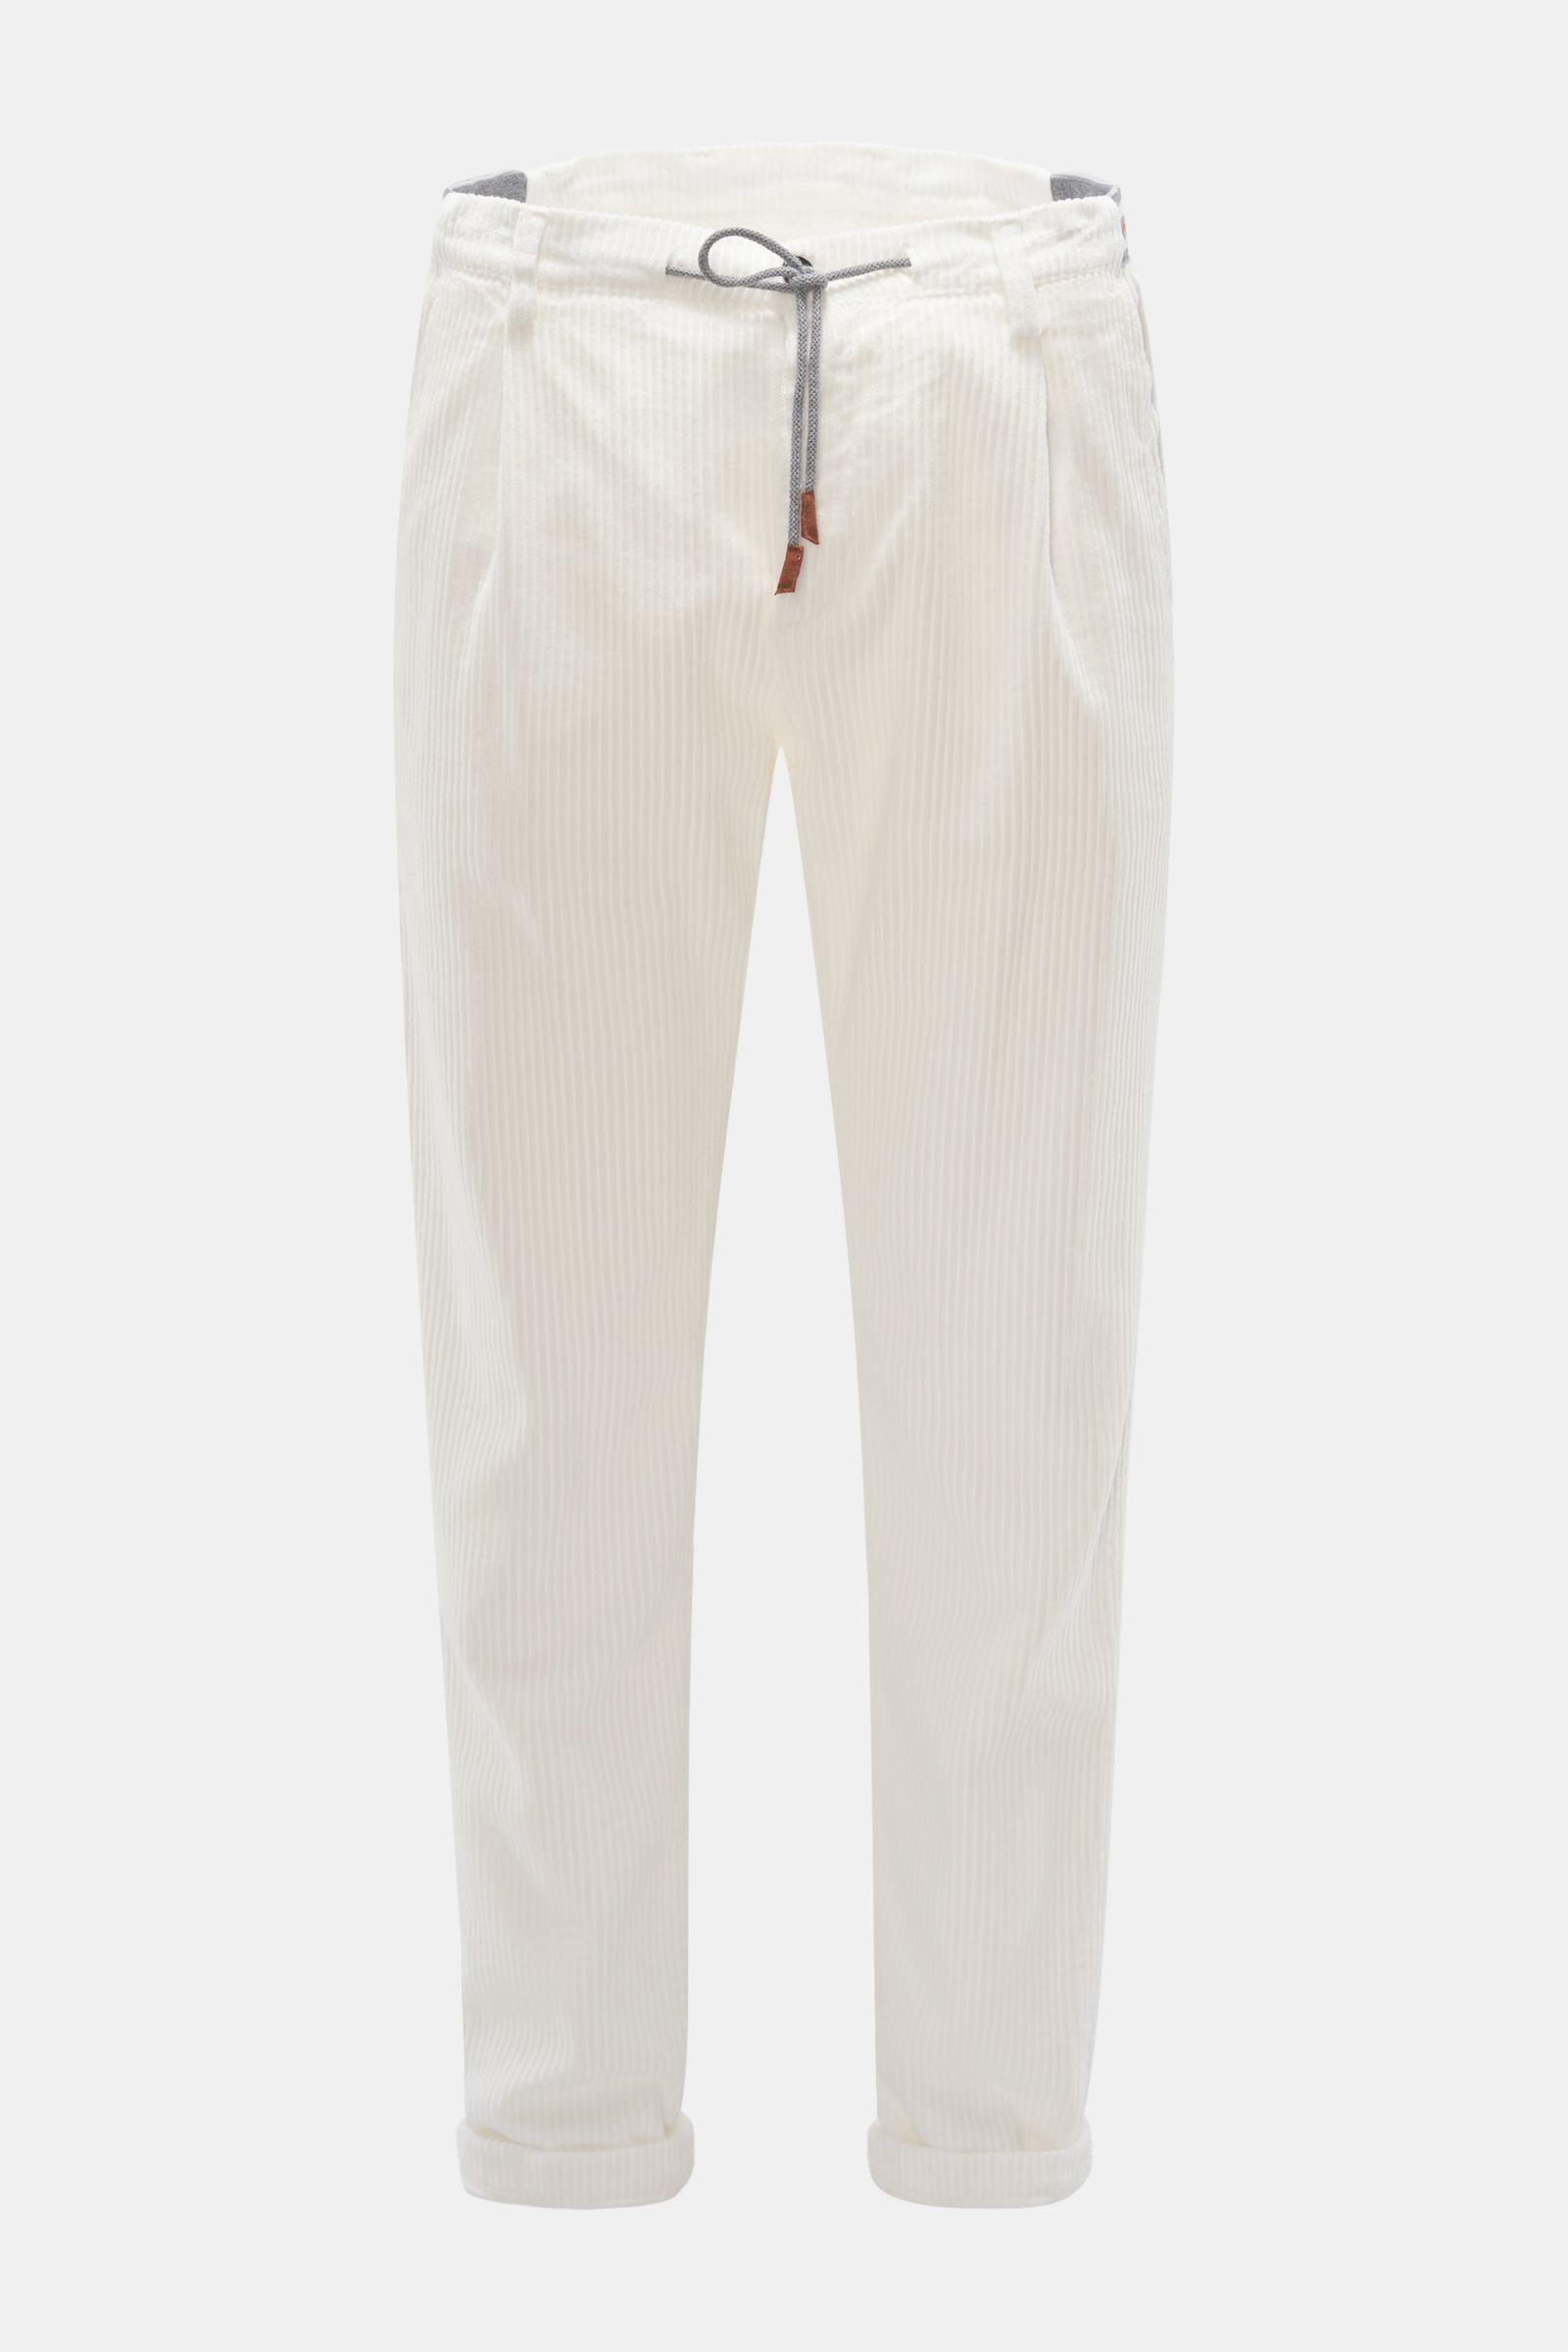 Corduroy jogger pants white